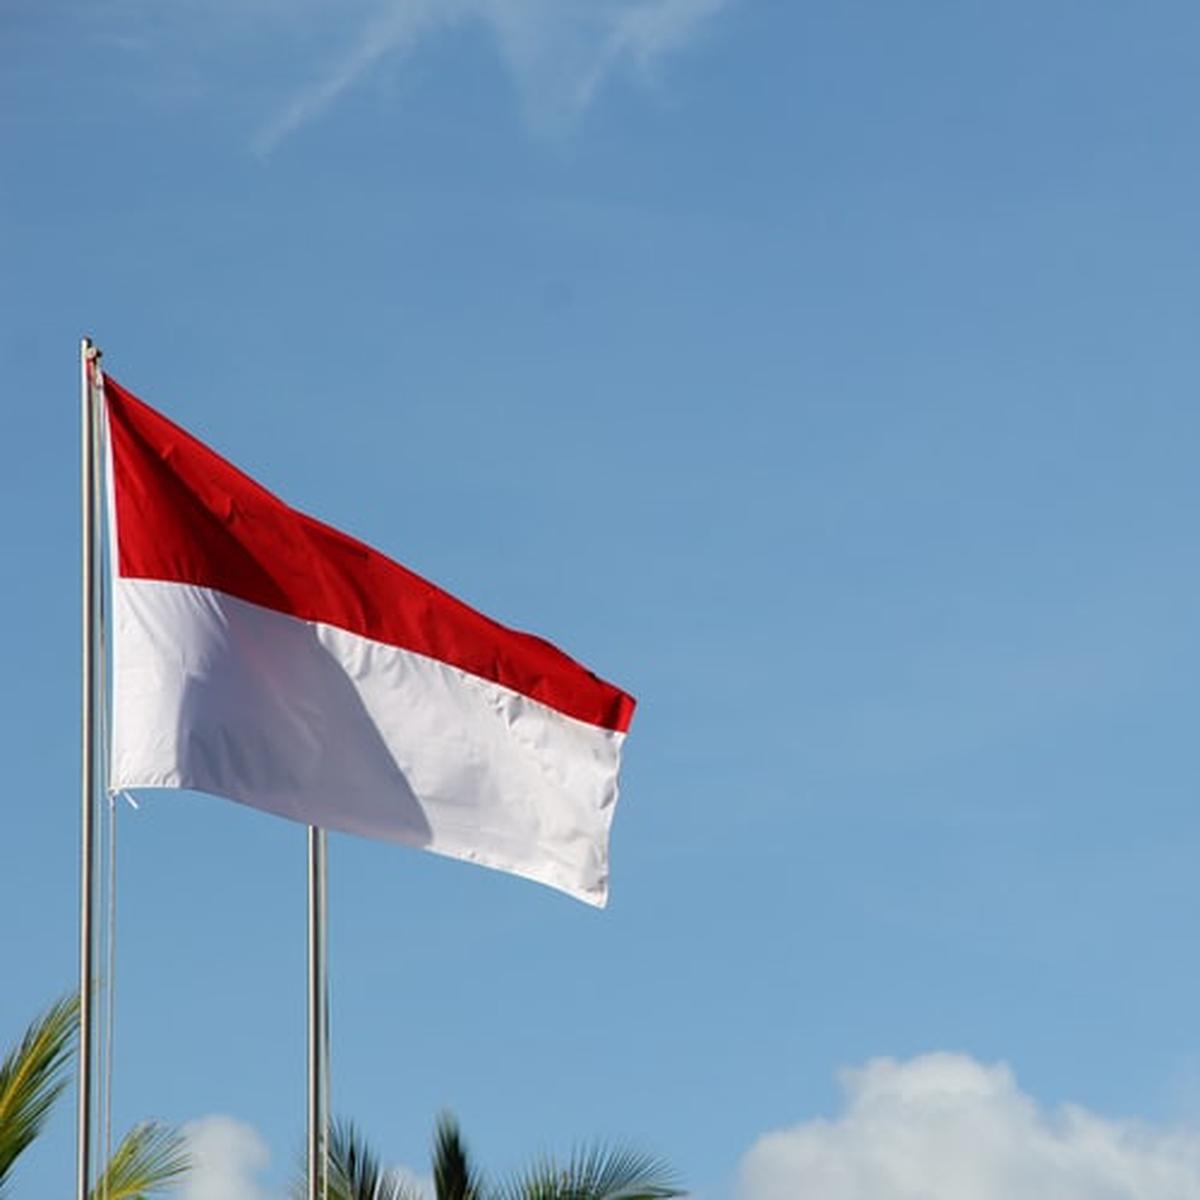 Kebhinekaan bangsa indonesia selalu diarahkan pada persatuan dan kesatuan bangsa. akan tetapi persat